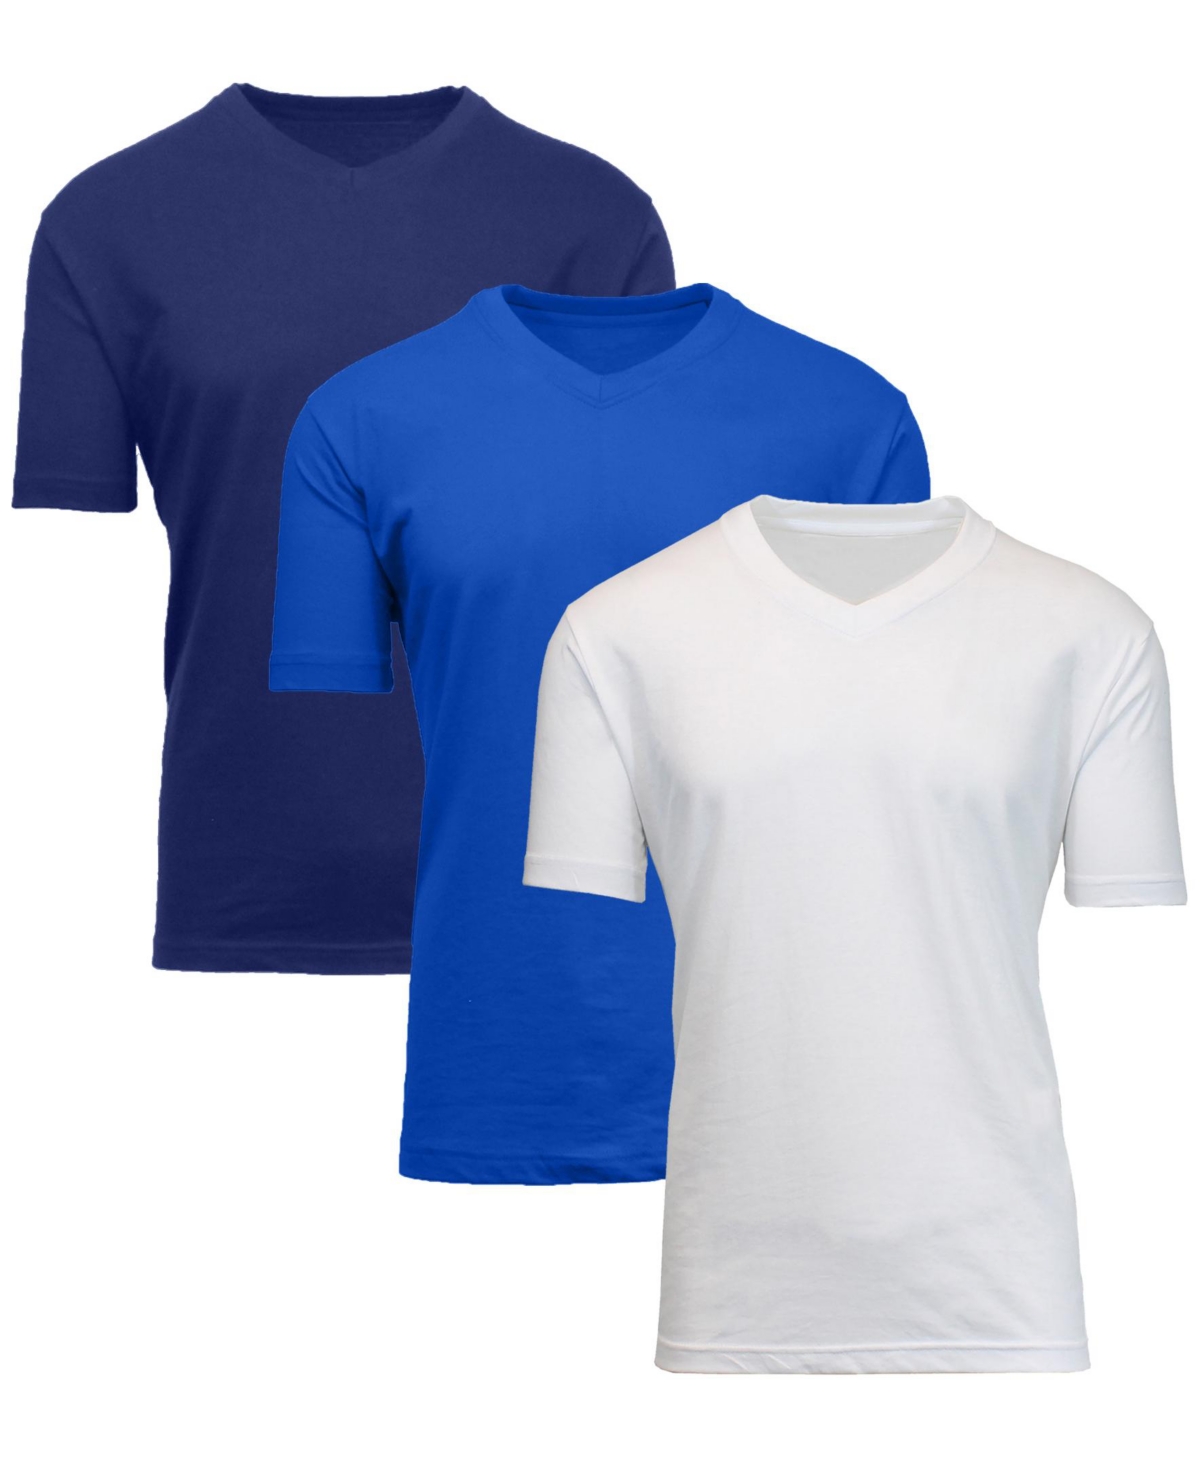 Blue Ice Men's Short Sleeve V-neck T-shirt, Pack Of 3 In Navy-royal-white